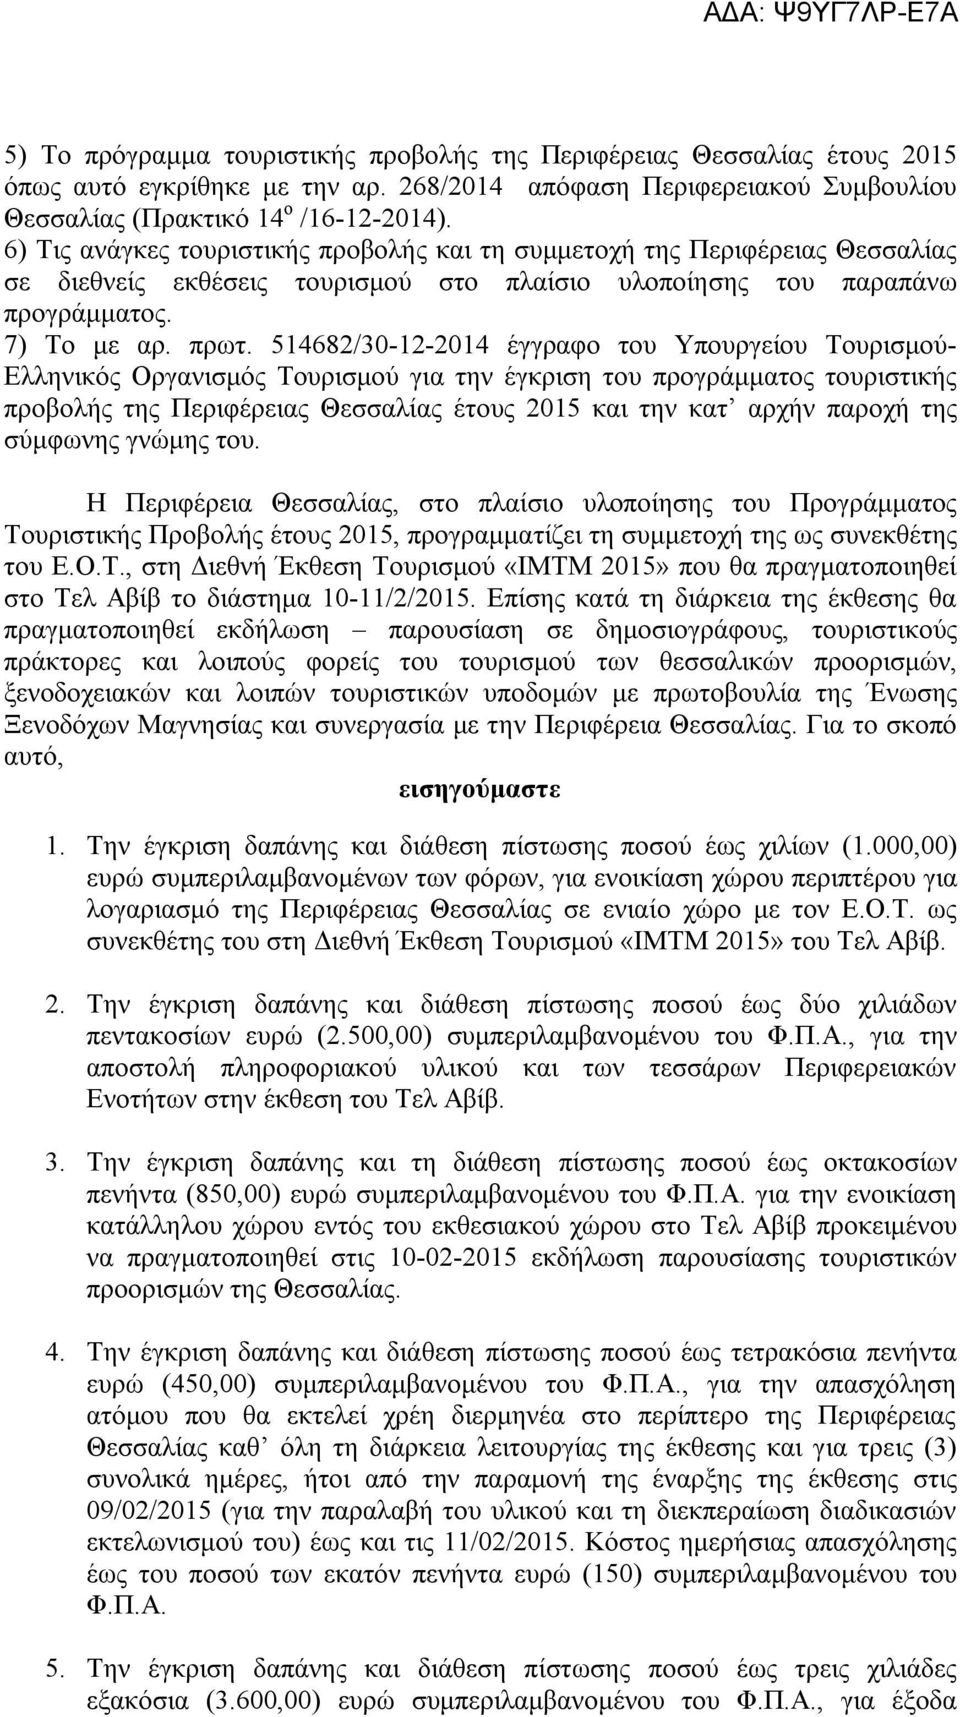 514682/30-12-2014 έγγραφο του Υπουργείου Τουρισμού- Ελληνικός Οργανισμός Τουρισμού για την έγκριση του προγράμματος τουριστικής προβολής της Περιφέρειας Θεσσαλίας έτους 2015 και την κατ αρχήν παροχή